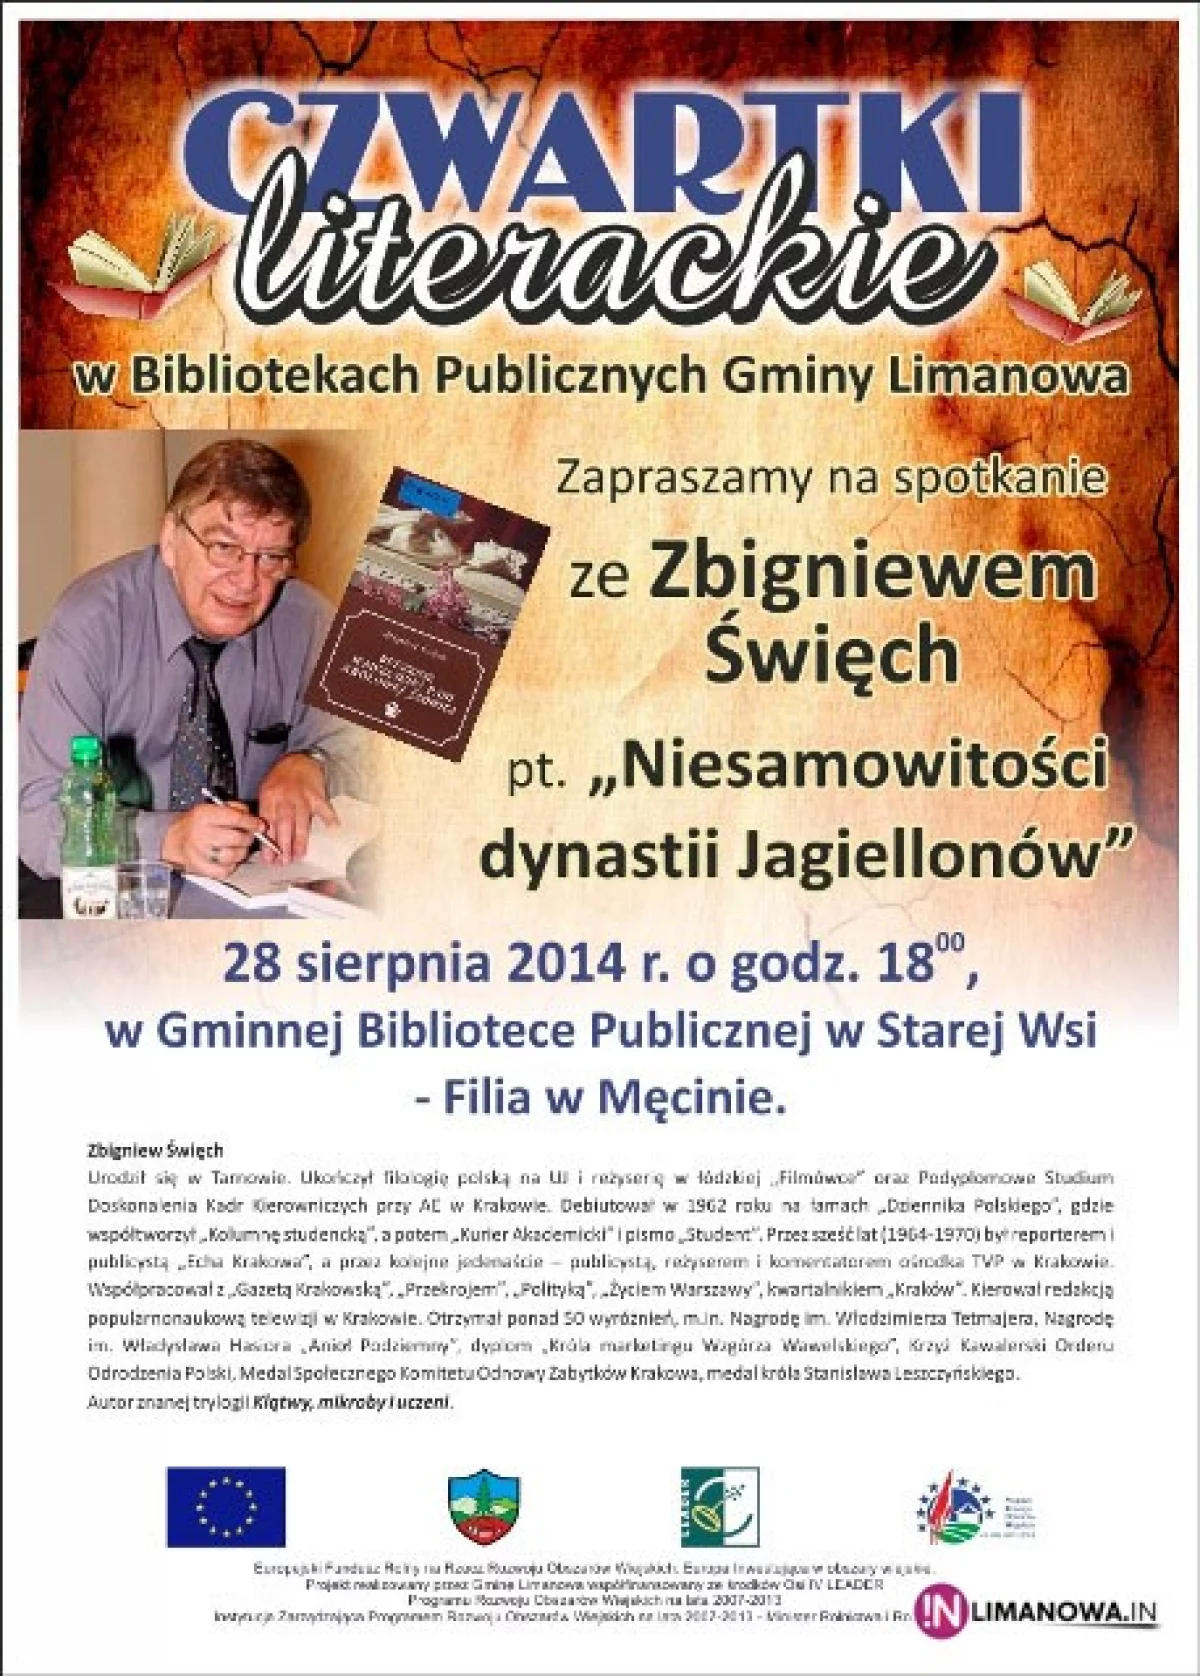 Spotkanie ze Zbigniewem Święchem w Bibliotece w Męcinie w ramach Czwartków Literackich